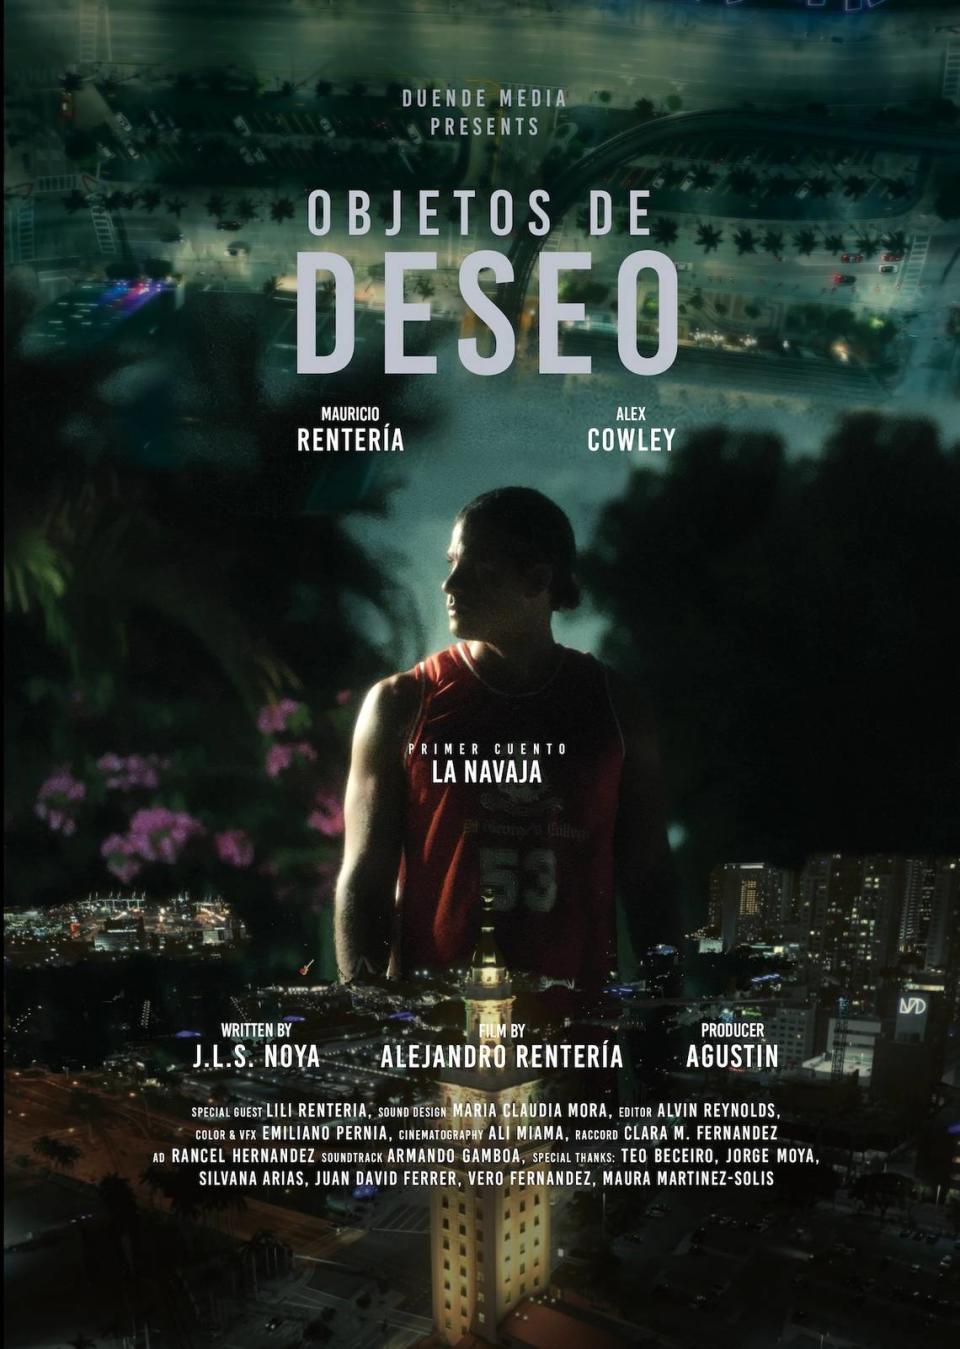  “Objetos de deseo”. Con este corto de ficción filmado en Miami, Alejandro Rentería nos muestra un lado oscuro de la ciudad. 